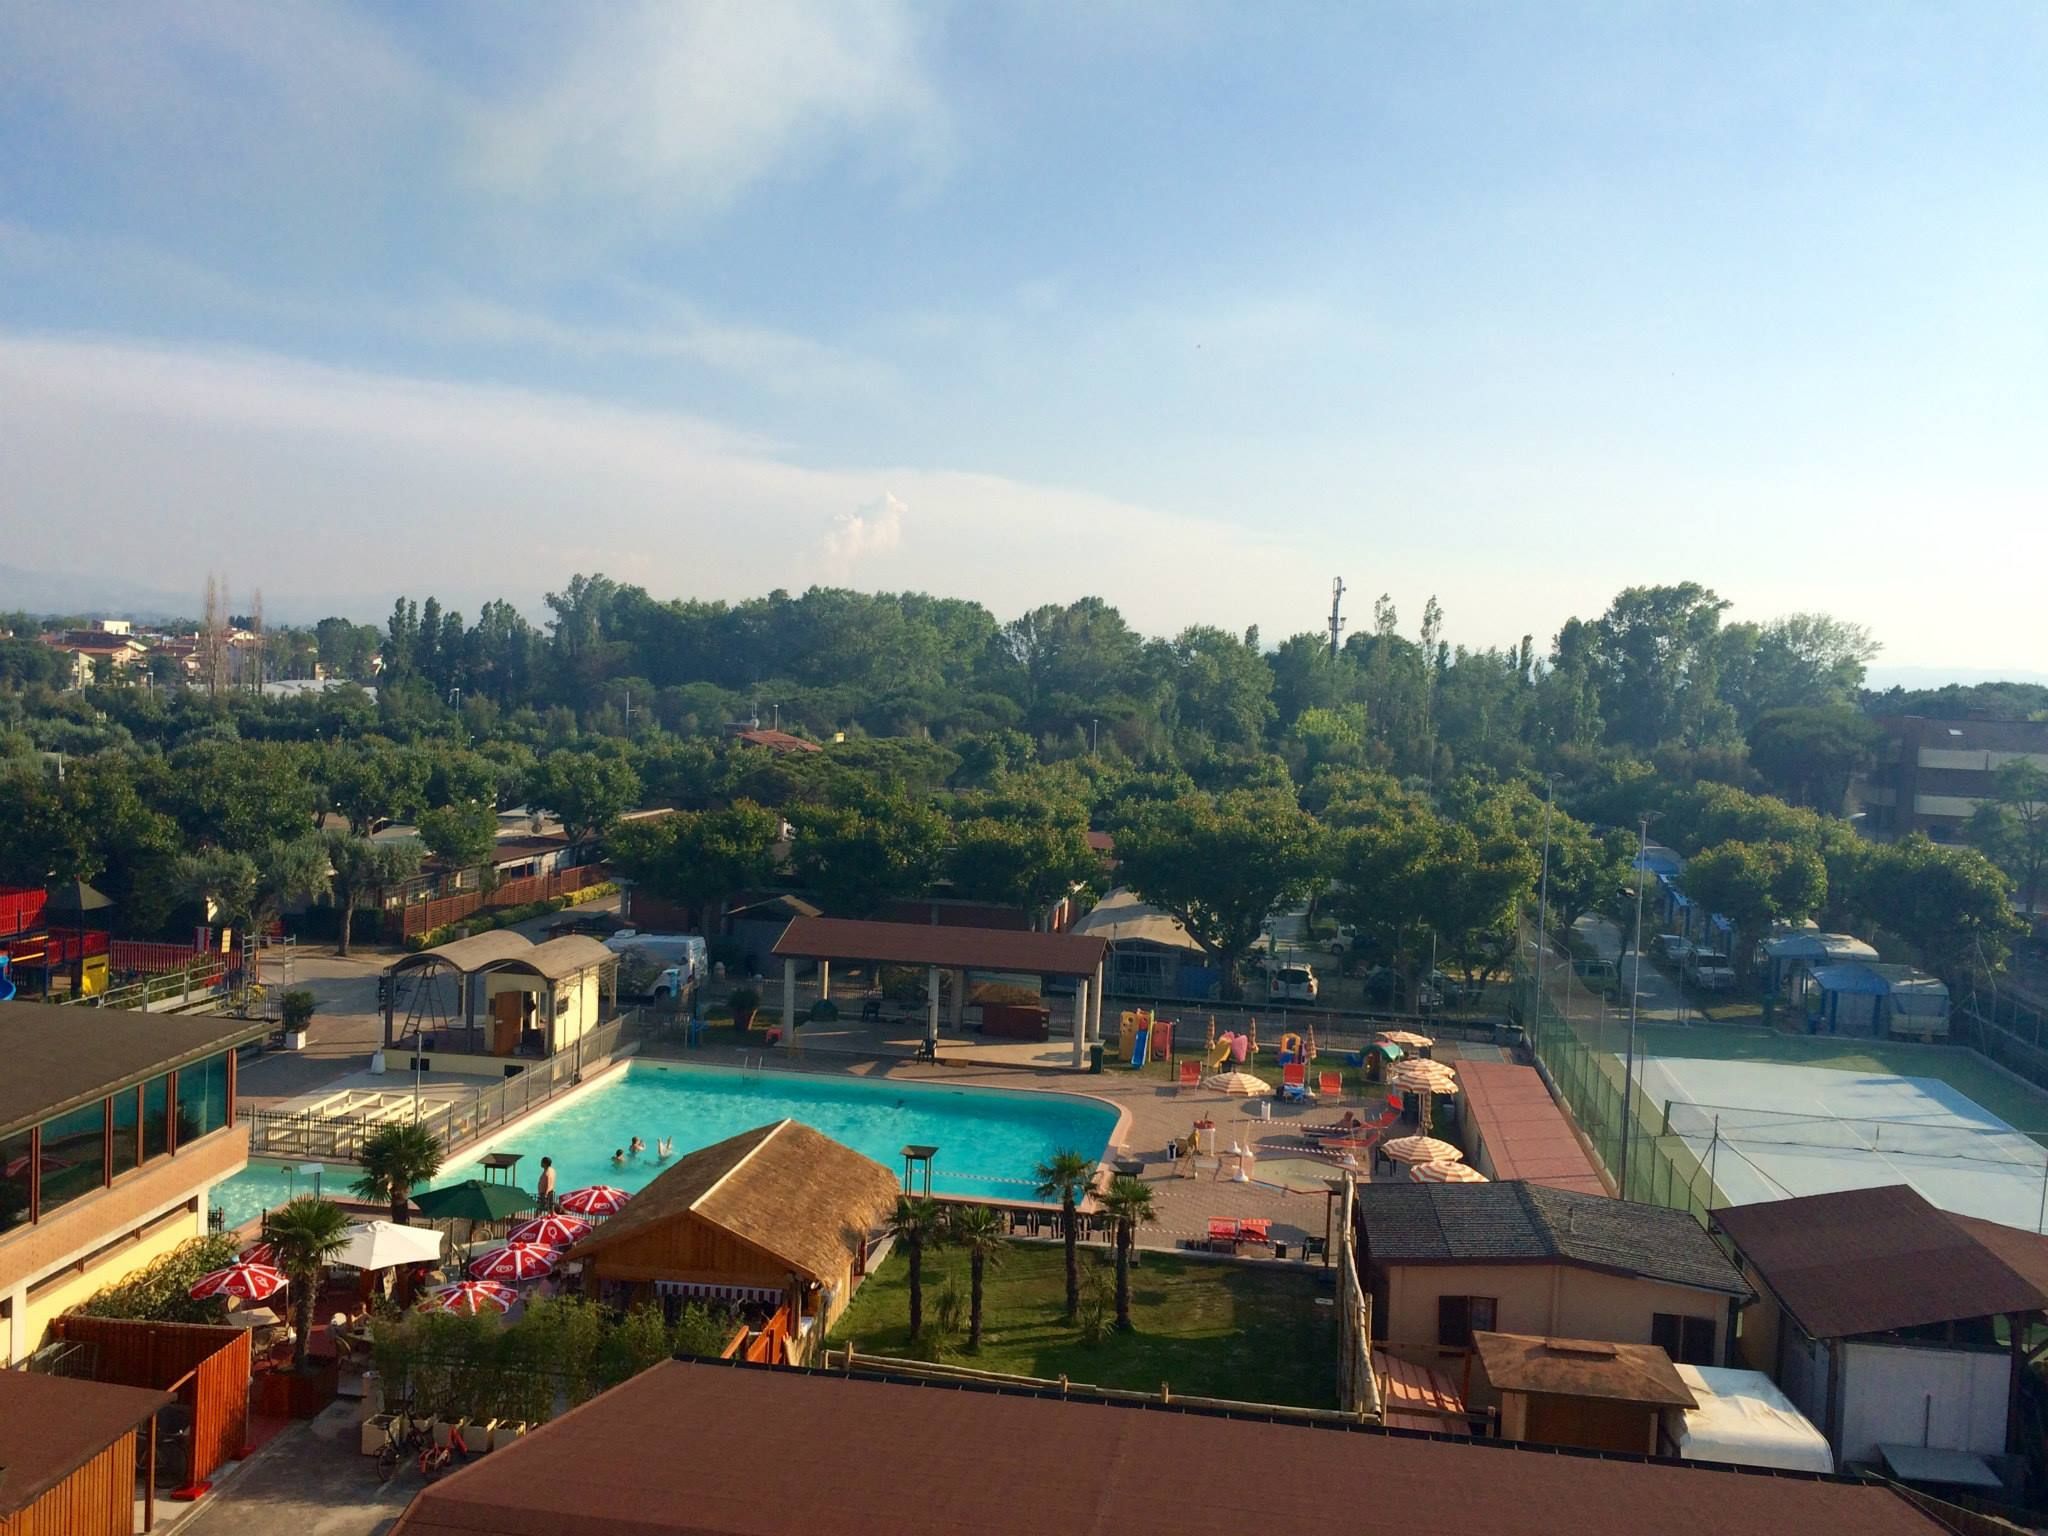 Camping met zwembad in Emilia Romagna